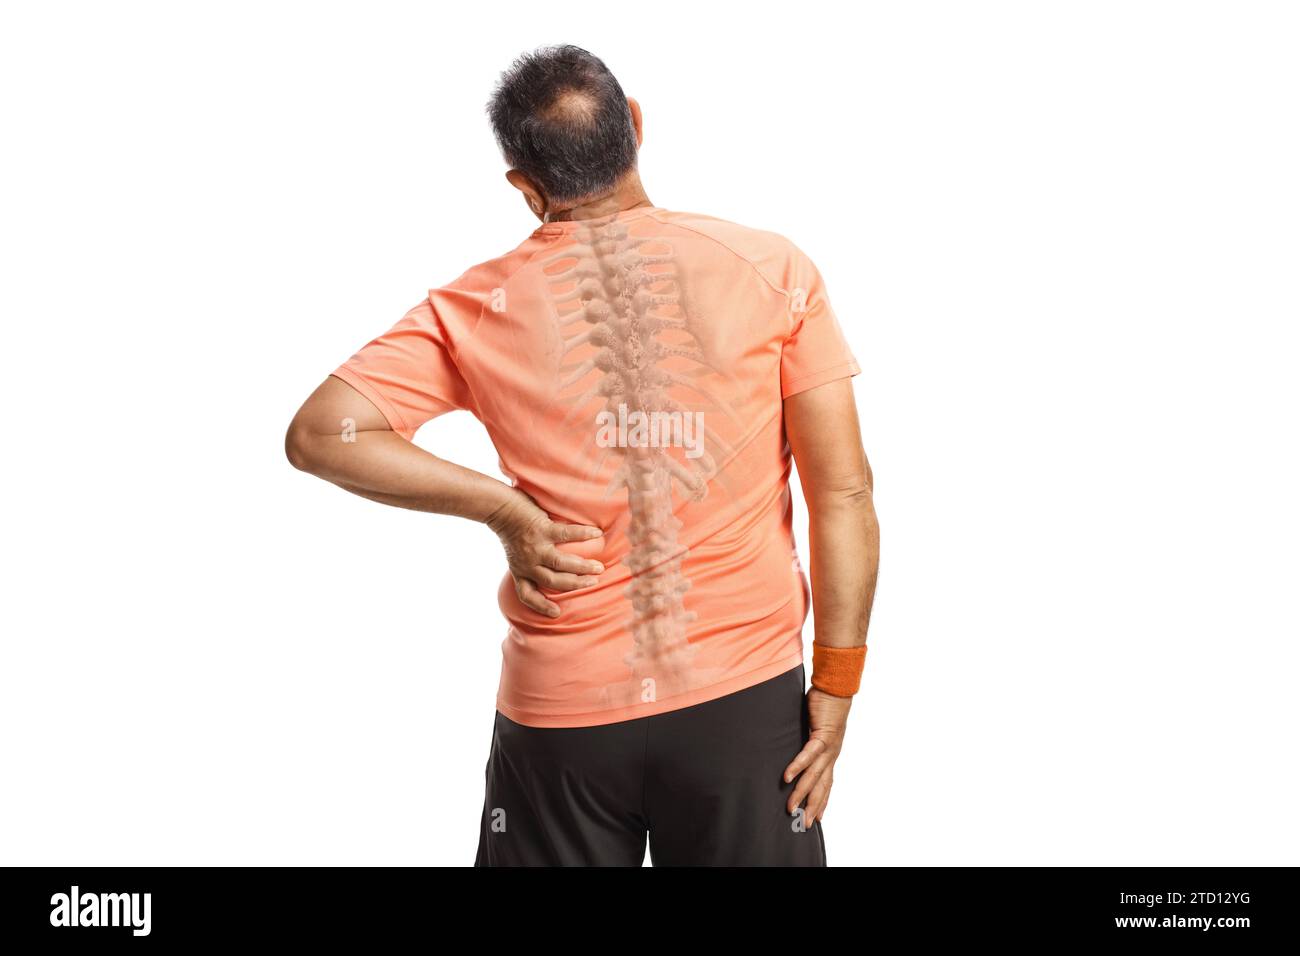 Rückansicht eines Mannes, der seinen schmerzhaften Rücken hält, sichtbare Wirbelsäule isoliert auf weißem Hintergrund Stockfoto